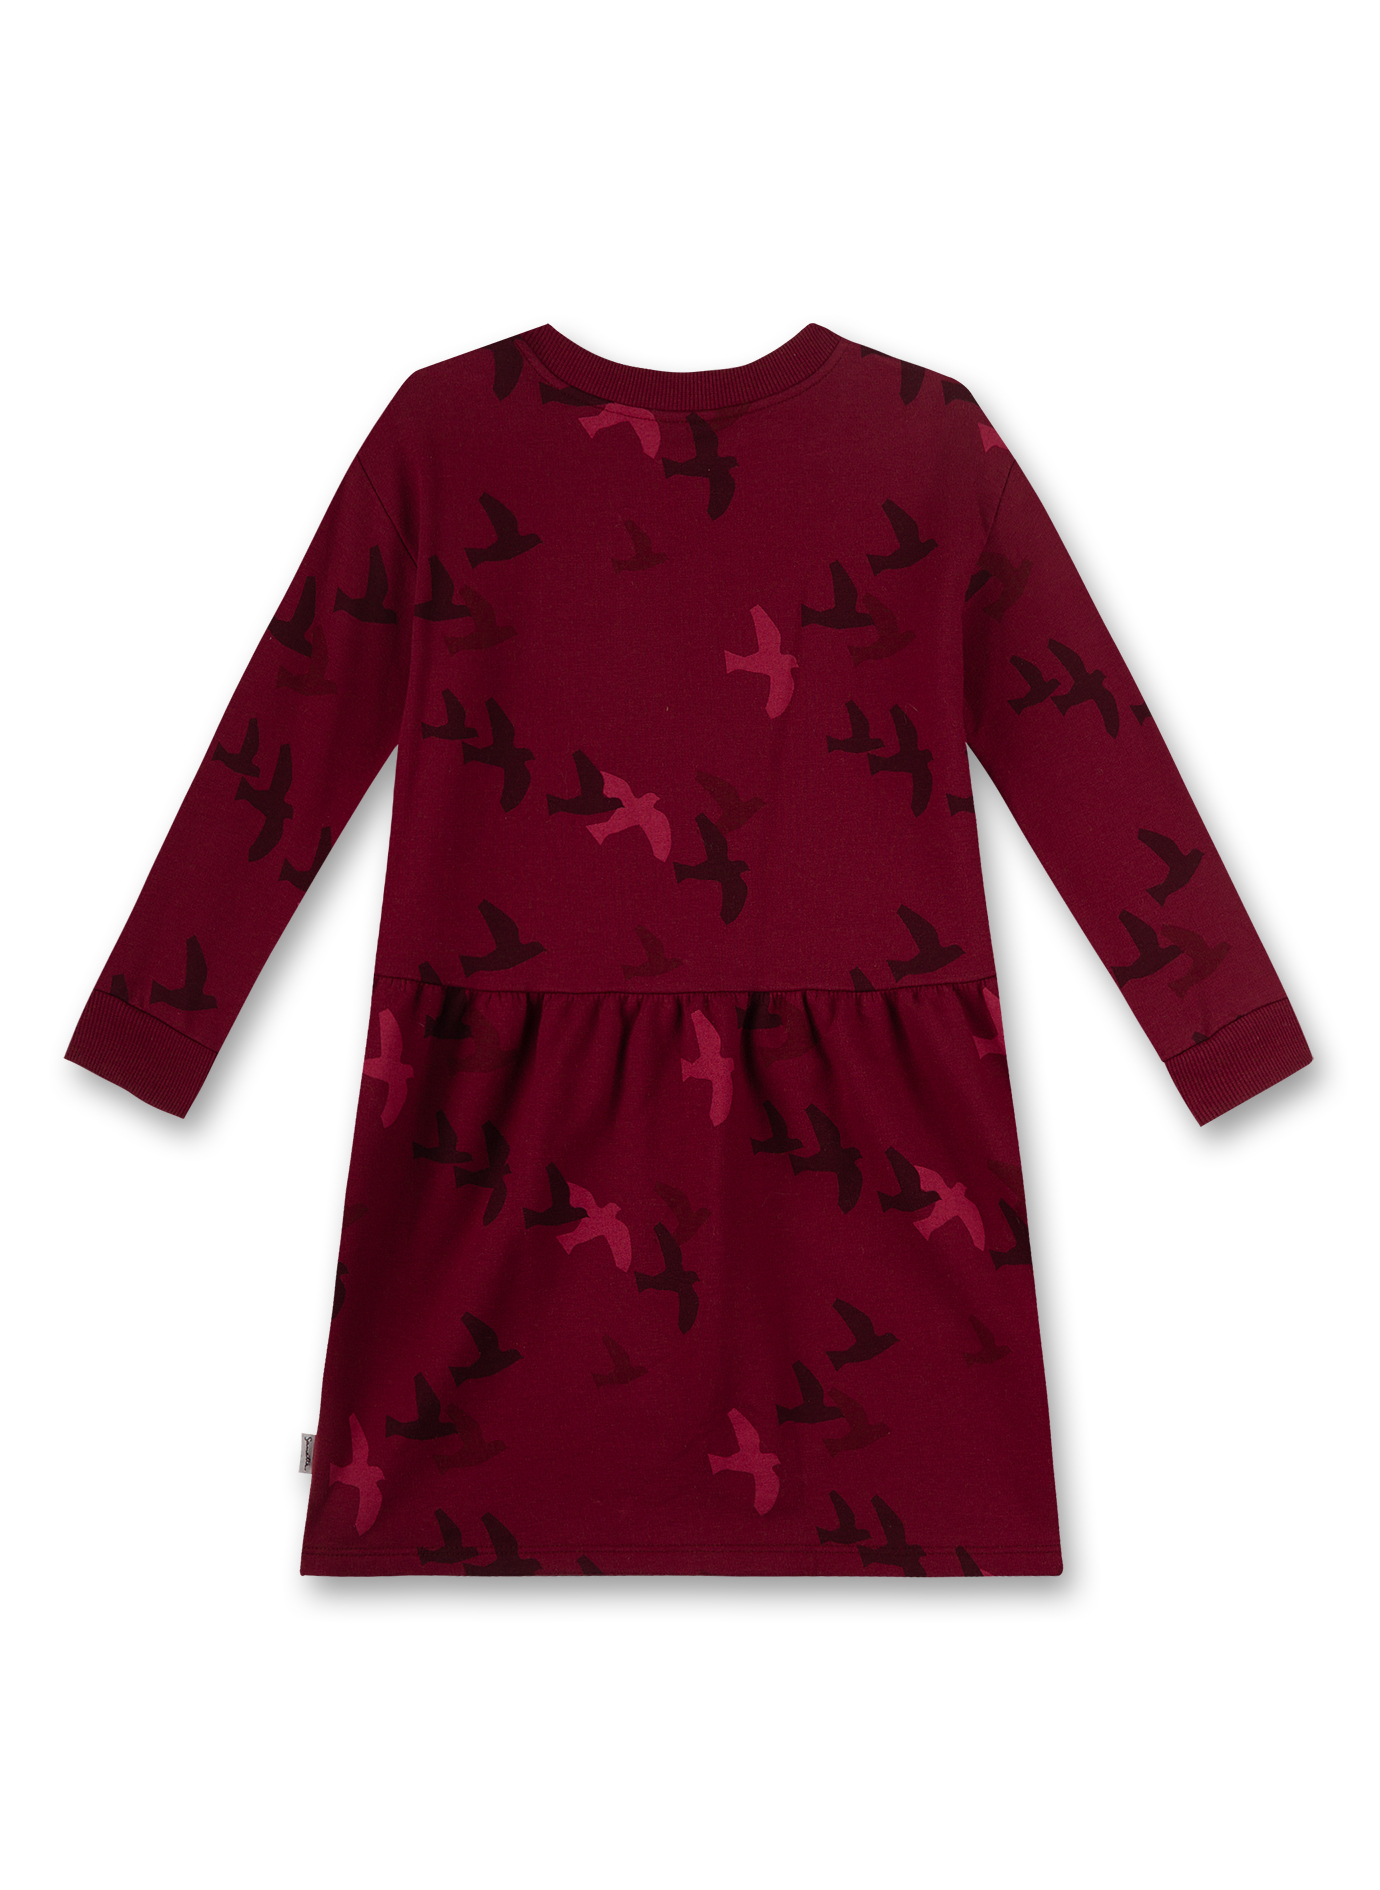 Mädchen-Kleid Rot Early Bird